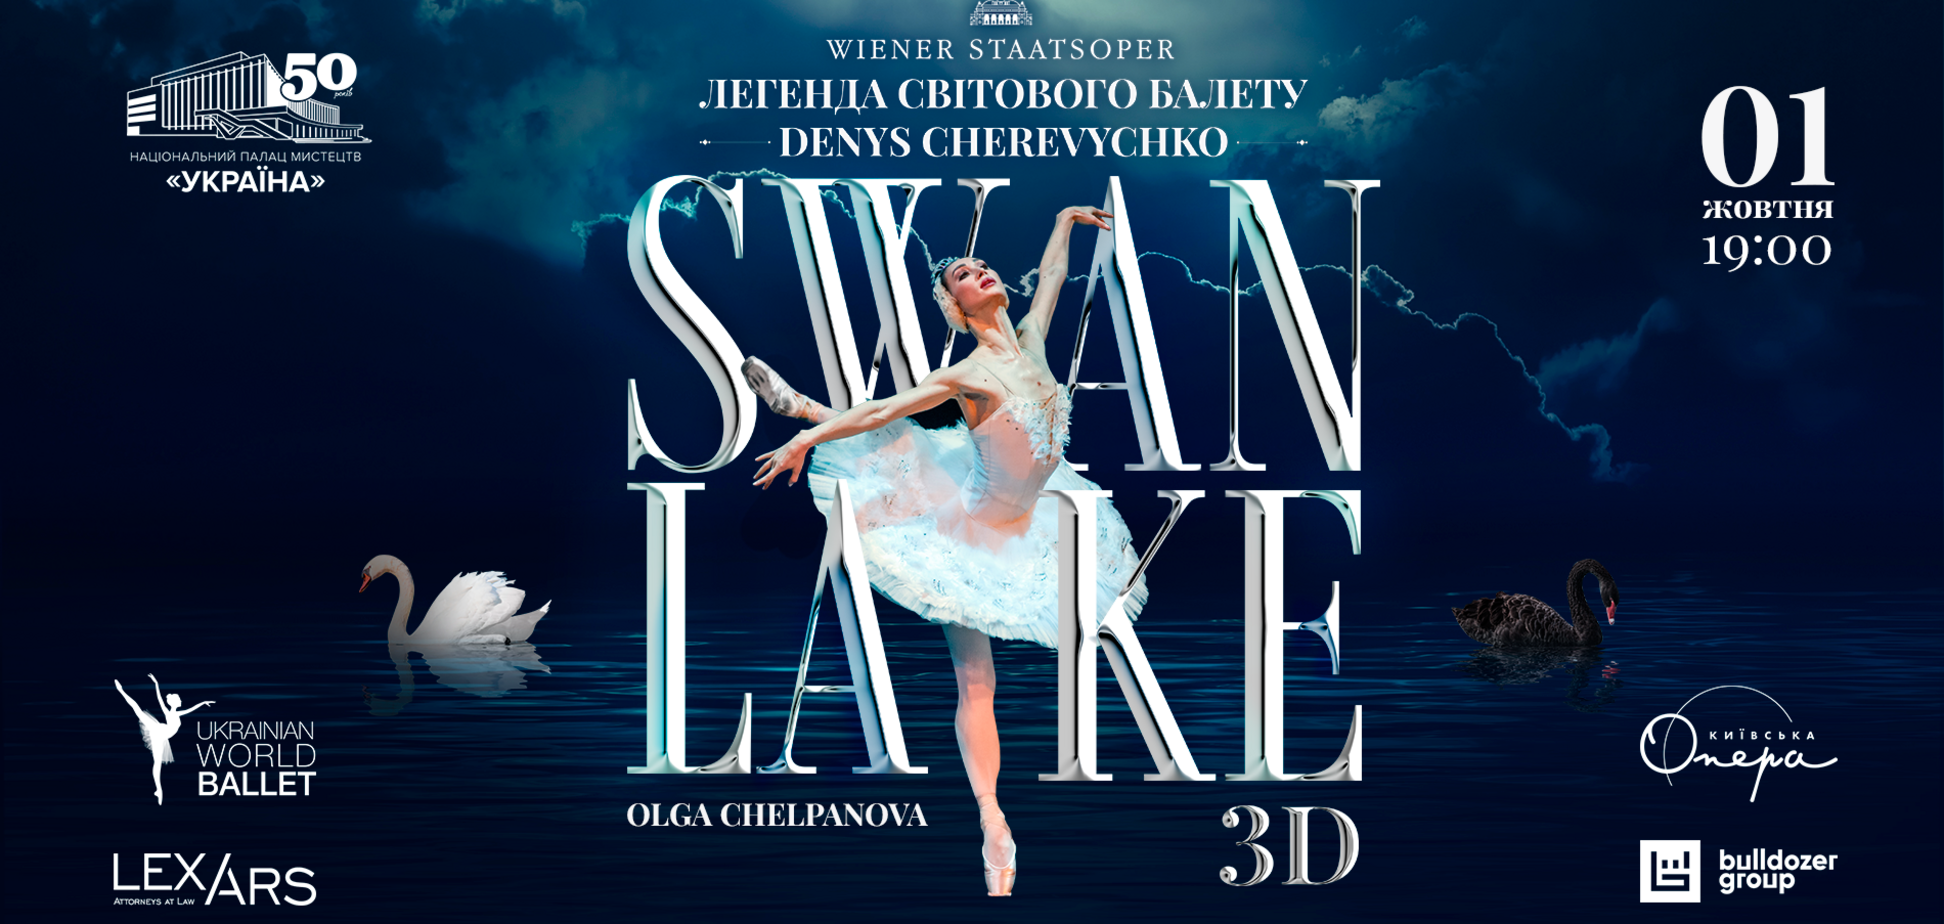 UKRAINIAN WORLD BALLET снова представит всемирно известный балет 'Лебединое озеро' 3D